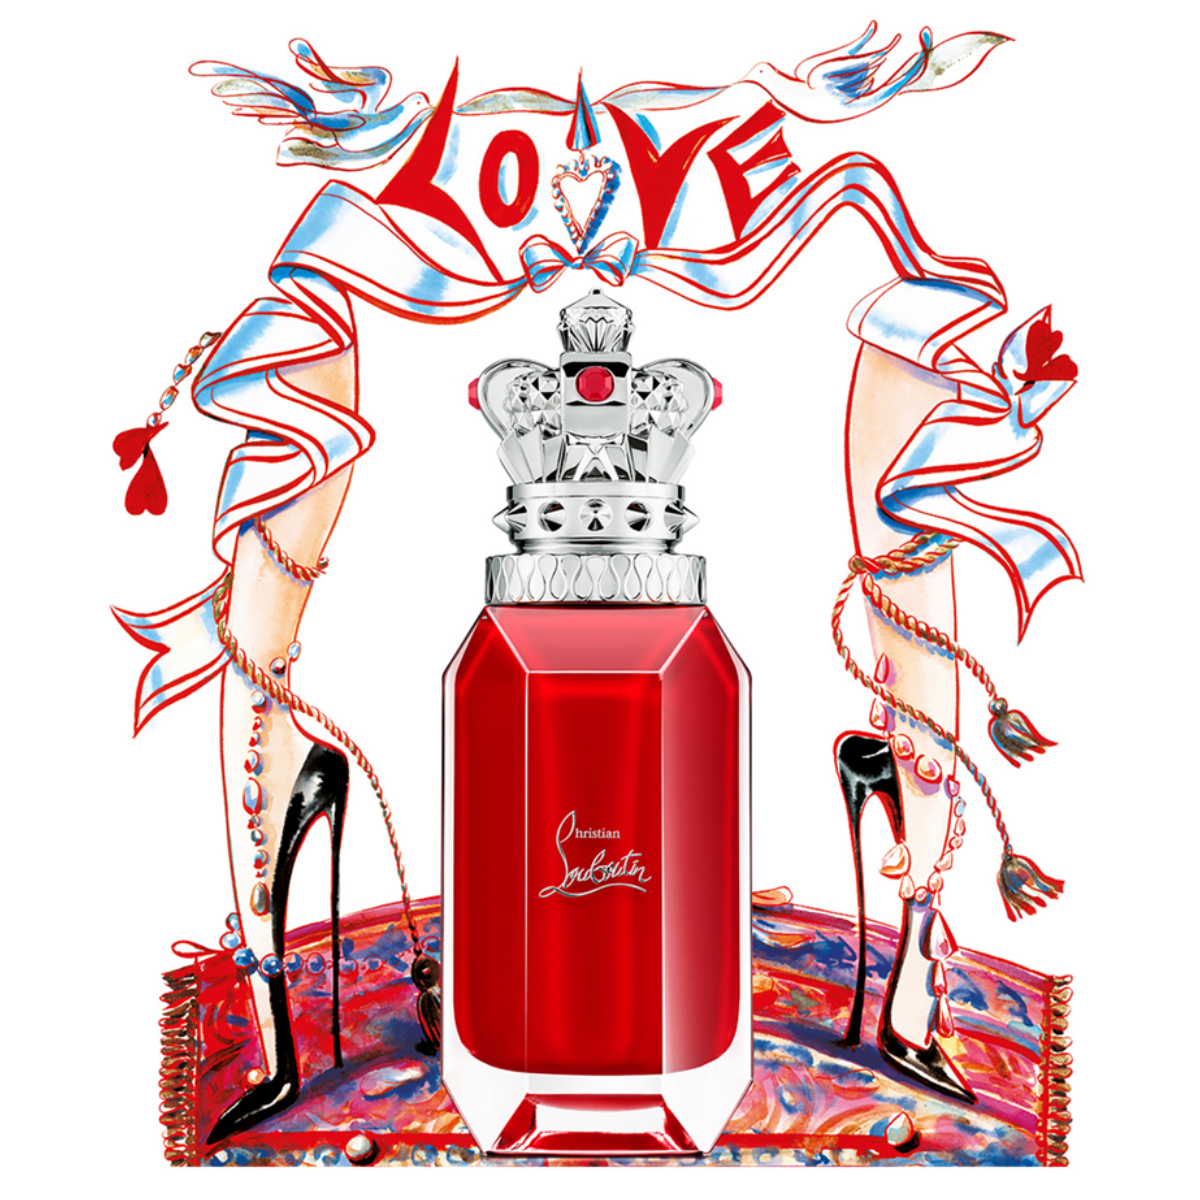 Christian Louboutin Loubicrown EDP 90ml - Nước hoa chính hãng 100% nhập  khẩu Pháp, Mỹ…Giá tốt tại Perfume168